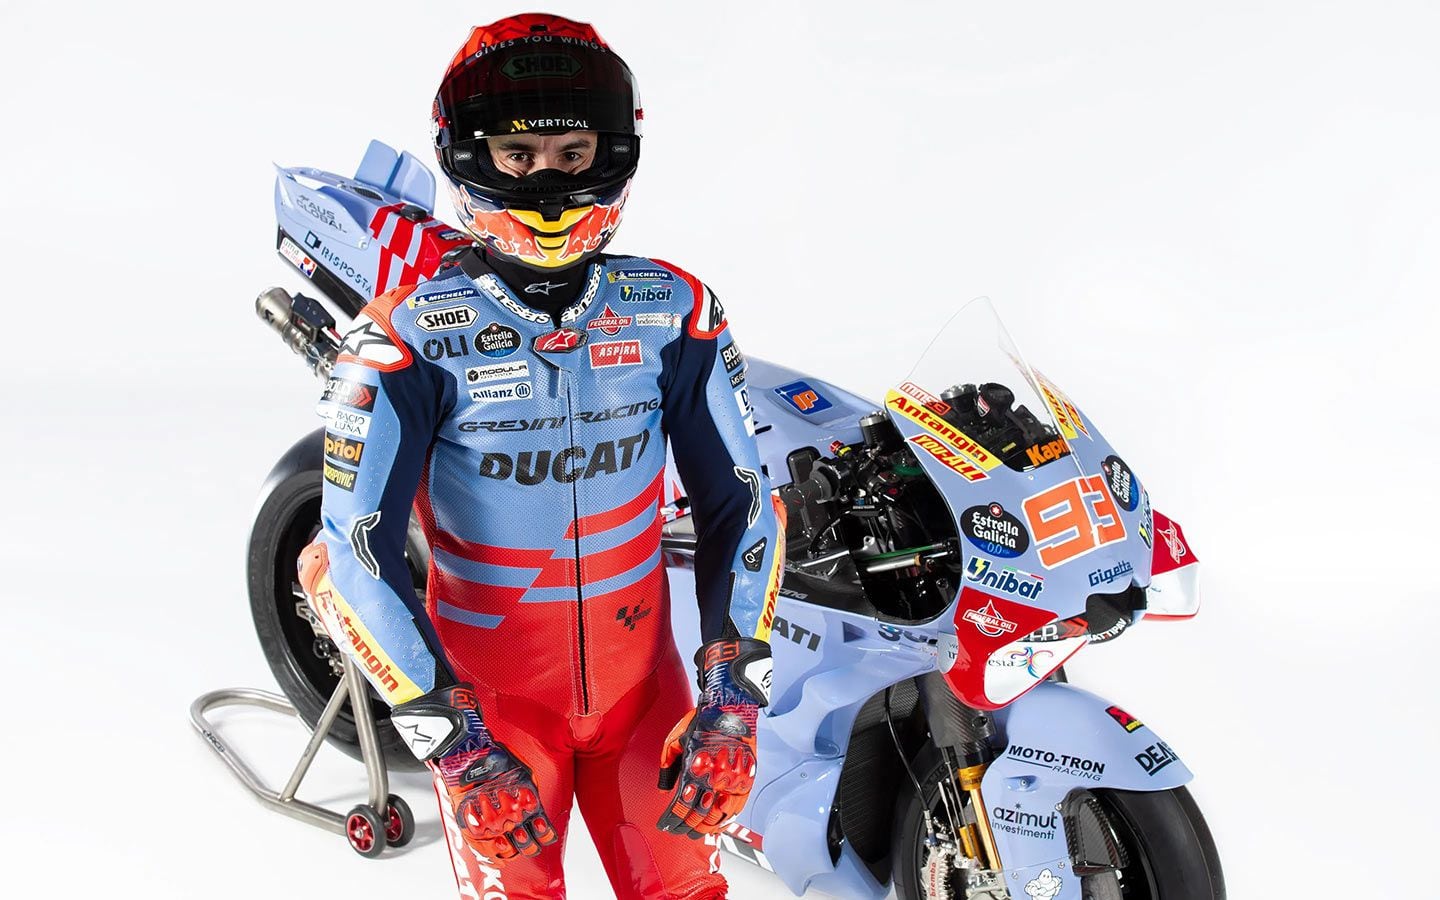 Marc Márquez est rapide sur sa Ducati, mais affirme qu'il y a encore beaucoup à apprendre et un écart à combler.